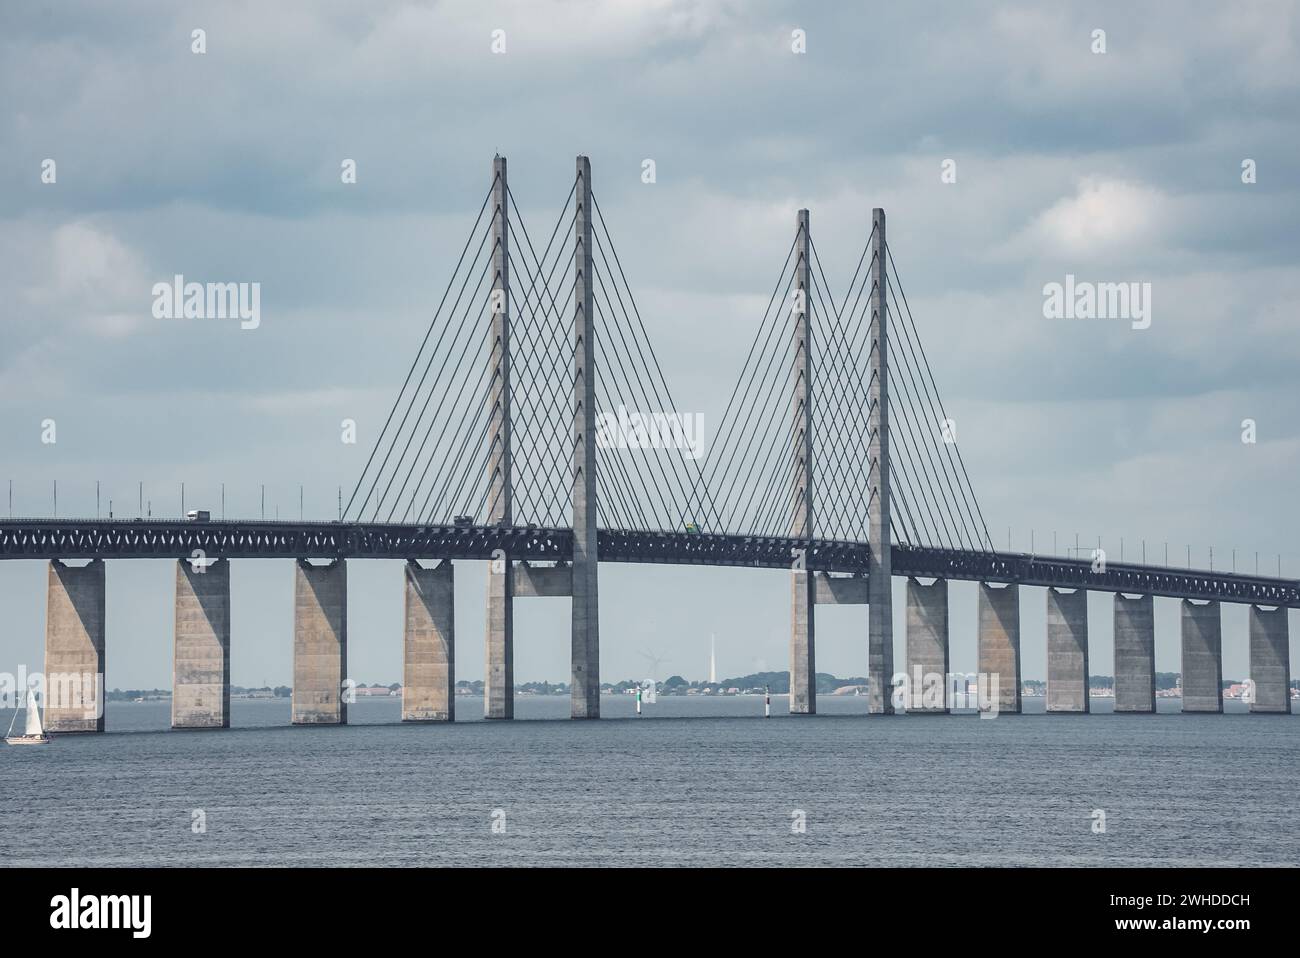 Le pont moderne d'Oresund relie désormais Copenhague à Malmo de manière transparente. Banque D'Images